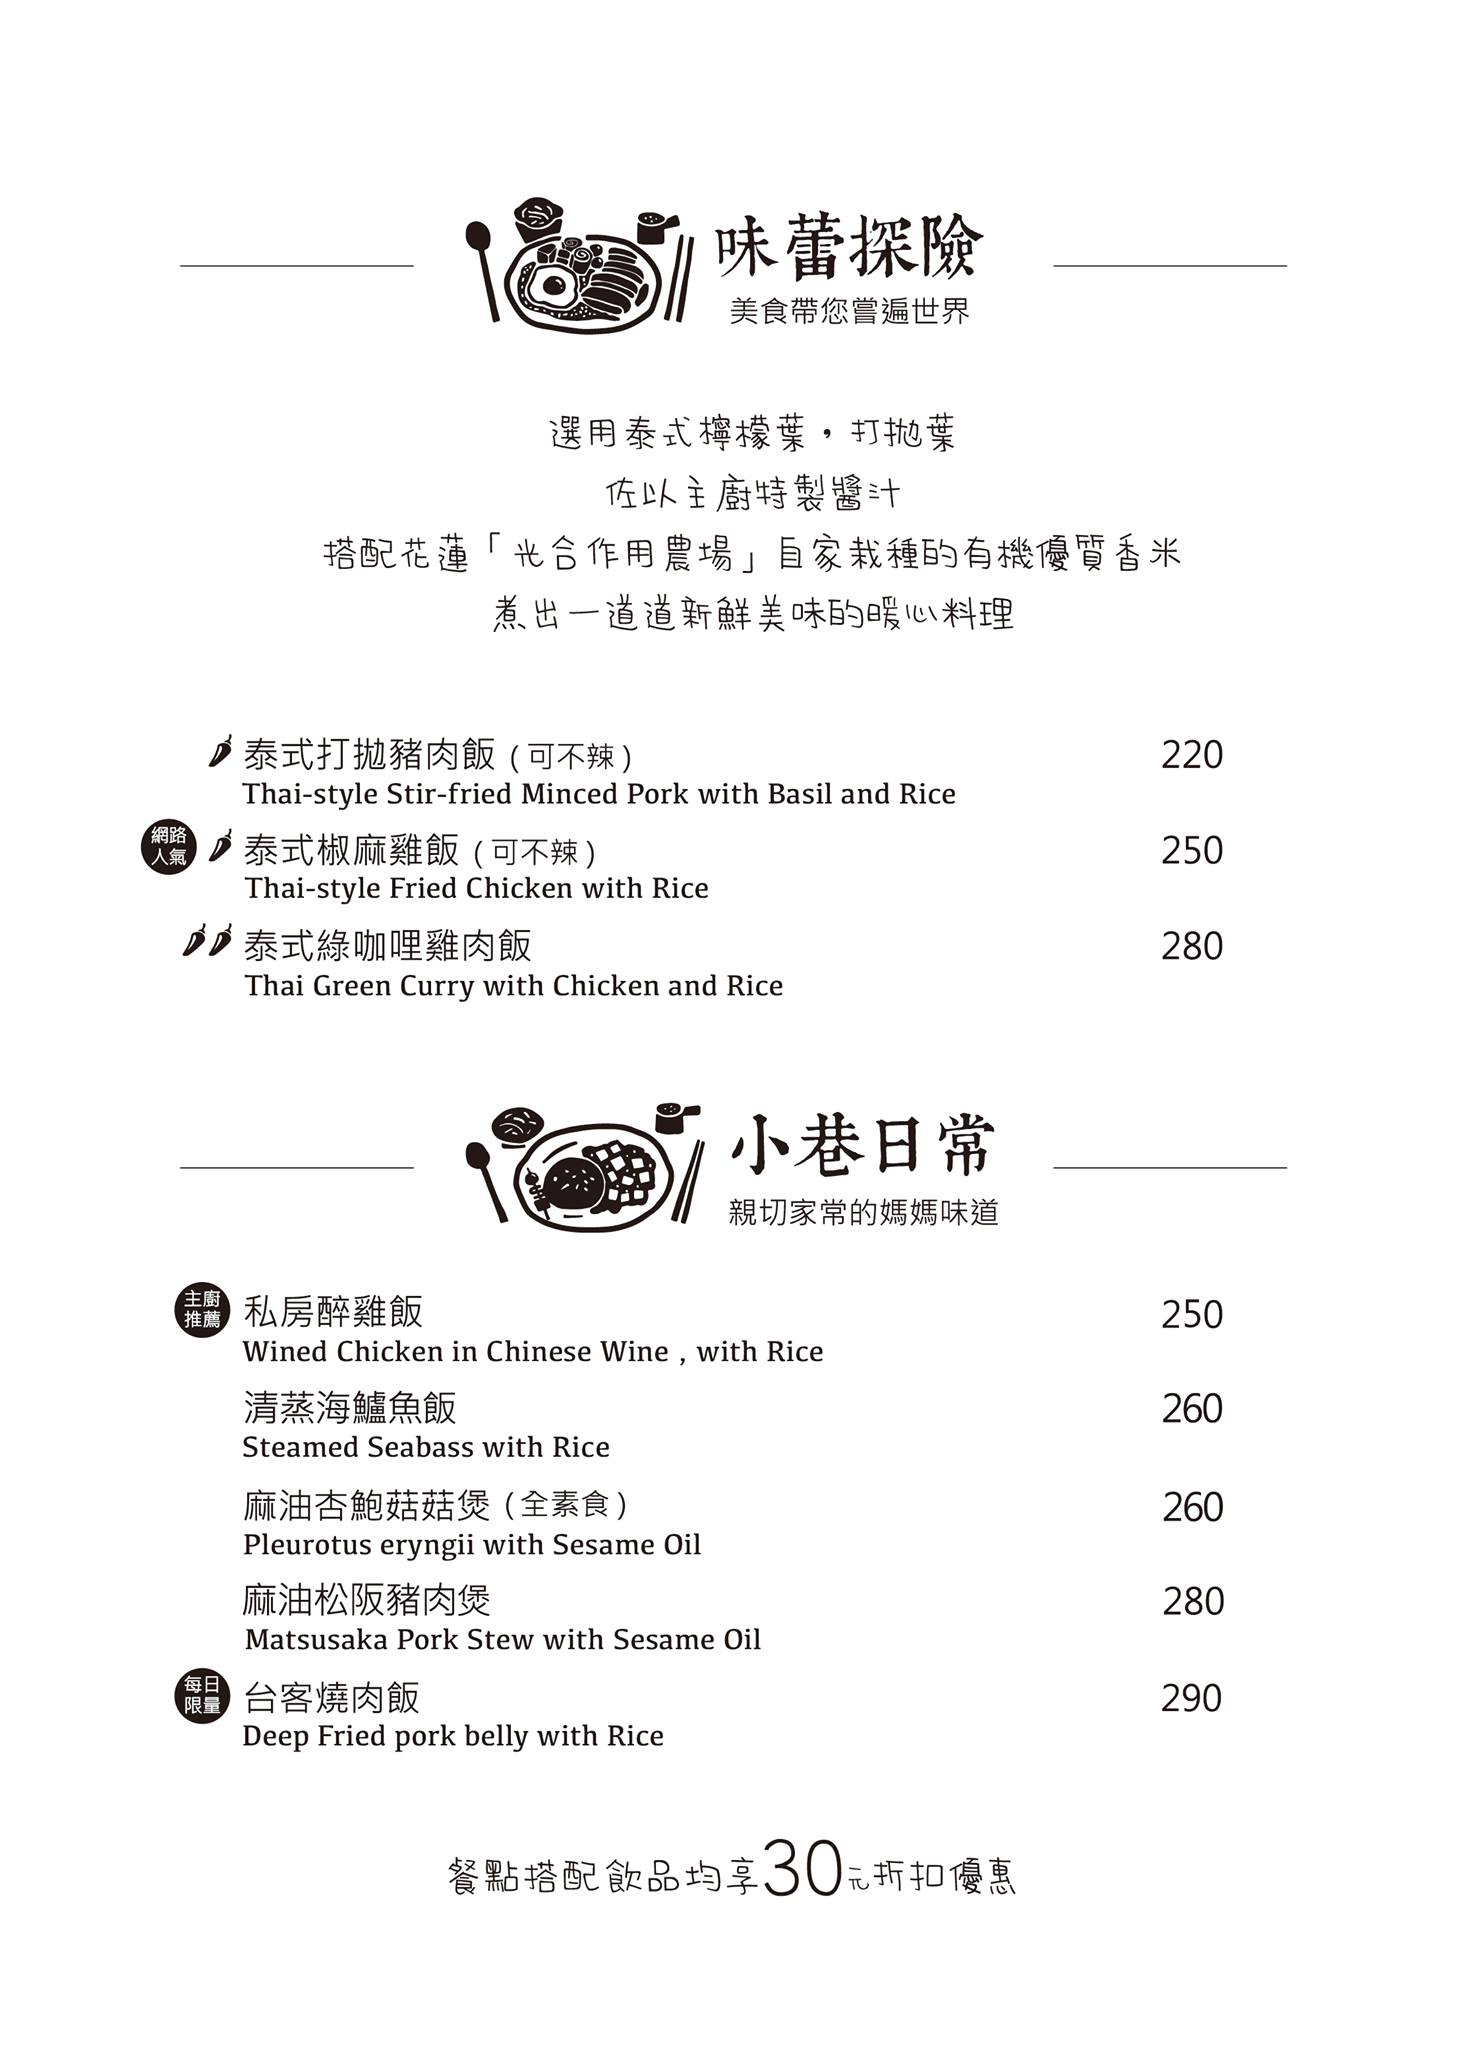 [花蓮美食]小巷茉莉 MôLi Café-舒芙蕾鬆餅好好吃 環境超美  花蓮咖啡店推薦 小巷茉莉菜單2021